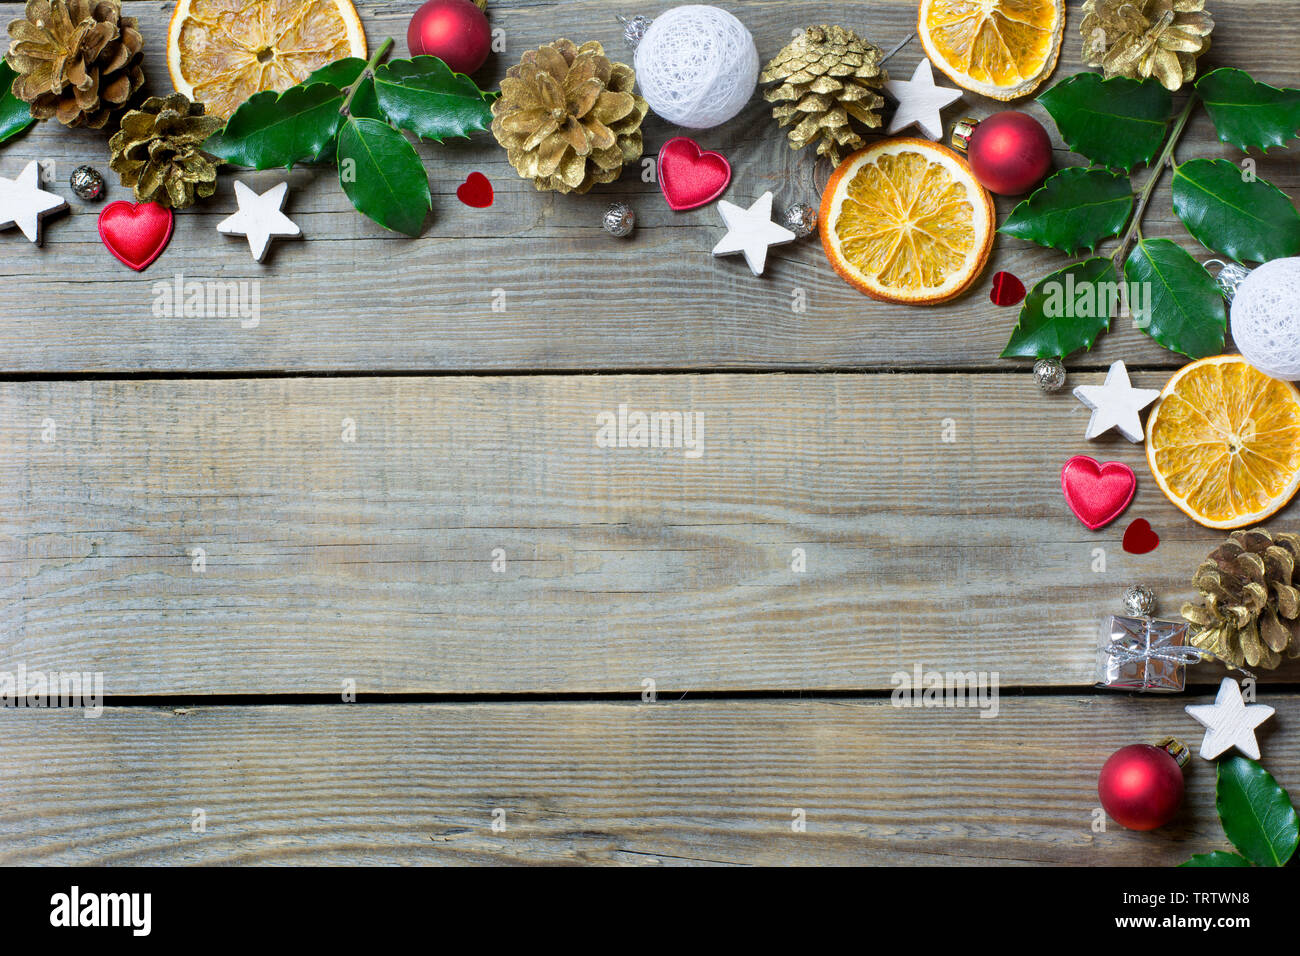 Weihnachten Zusammensetzung mit Orangenscheiben, Kegel, heiligen, Sterne, kleines Geschenk Safe, rote und weiße Kugeln und Herzen auf Holz- Hintergrund Stockfoto